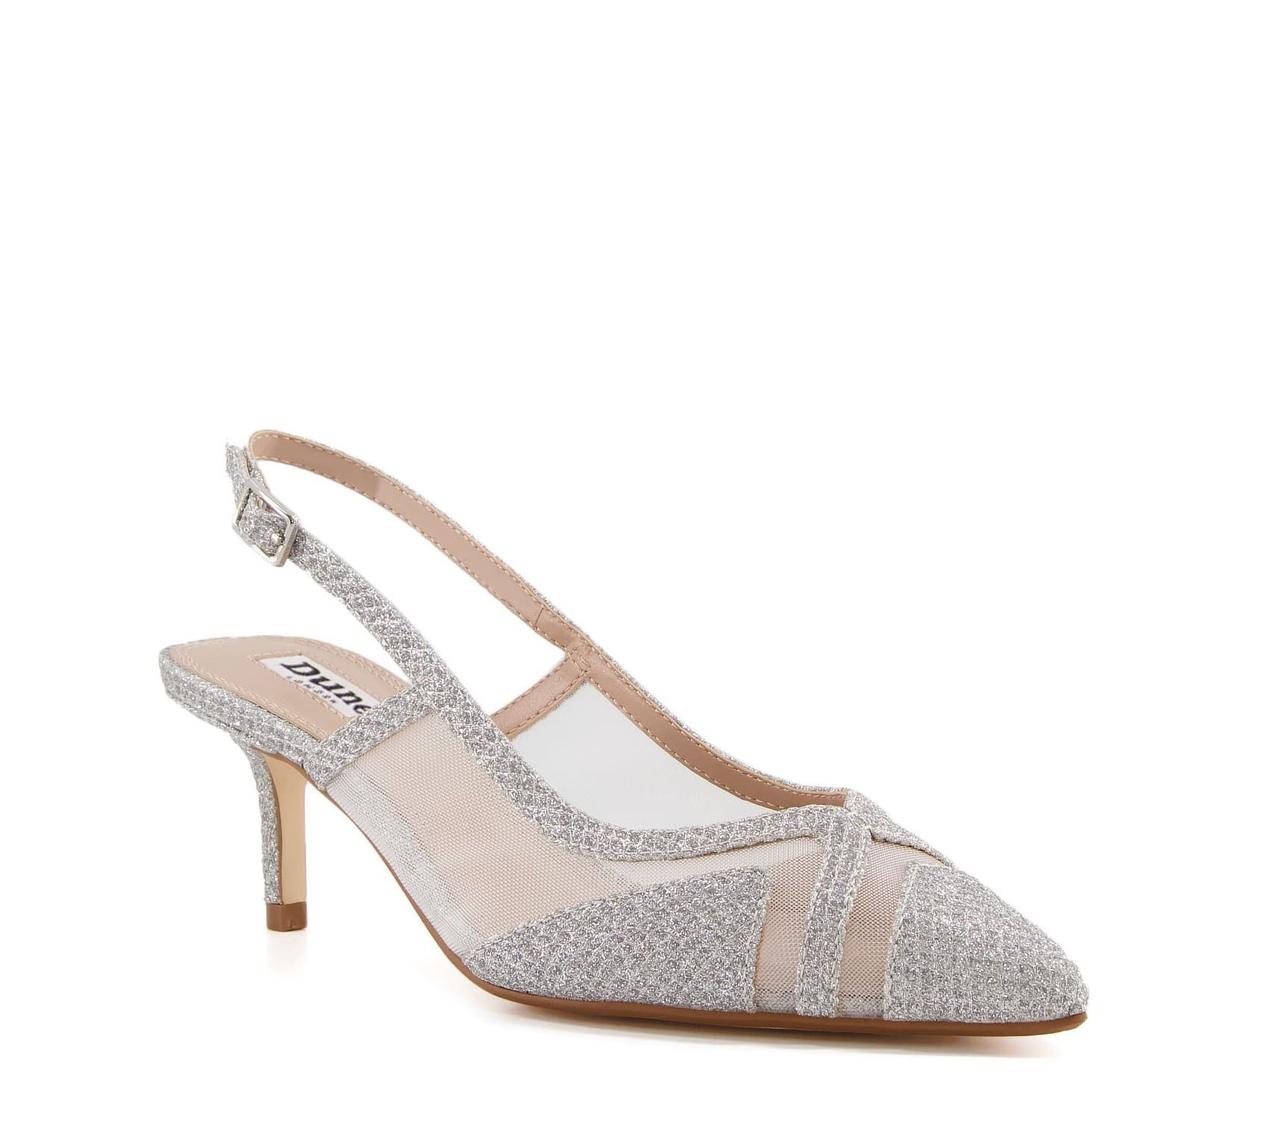 Barbieslingb Women's Silver Dress Sandals | Aldo Shoes